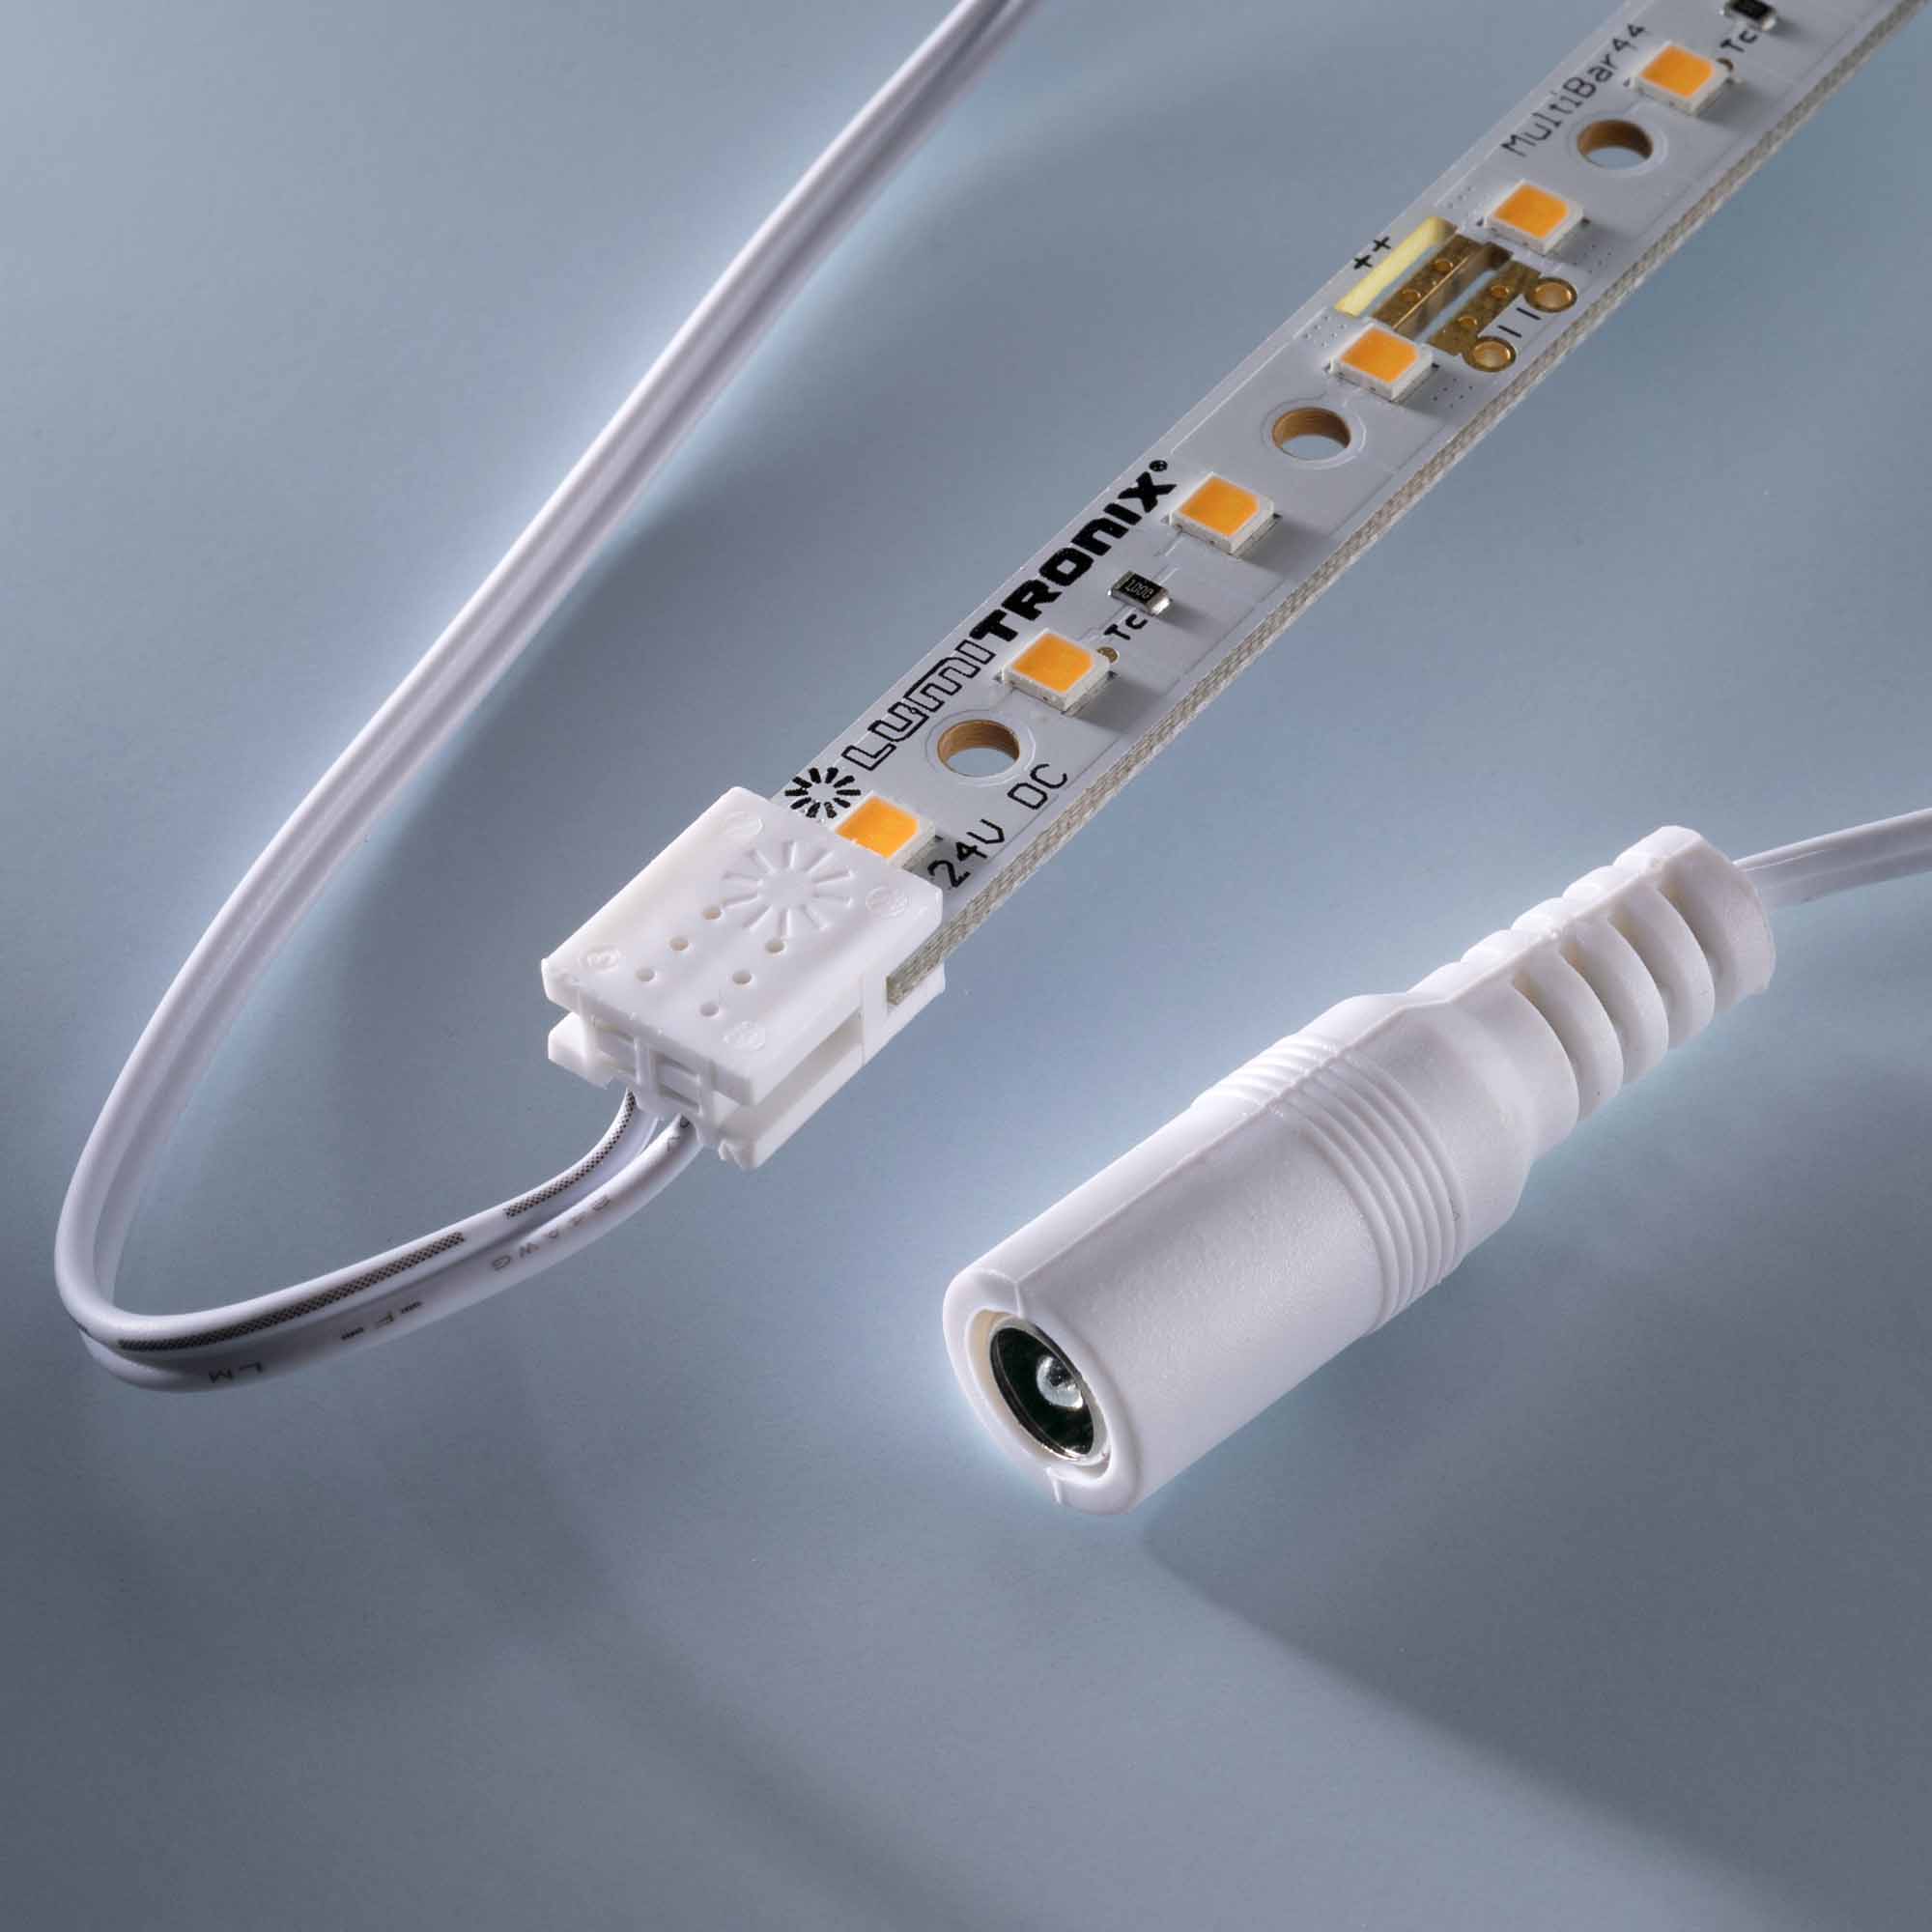 Conector com cabo para alimentação de energia para LED Matrix & MultiBar comprimento 100cm